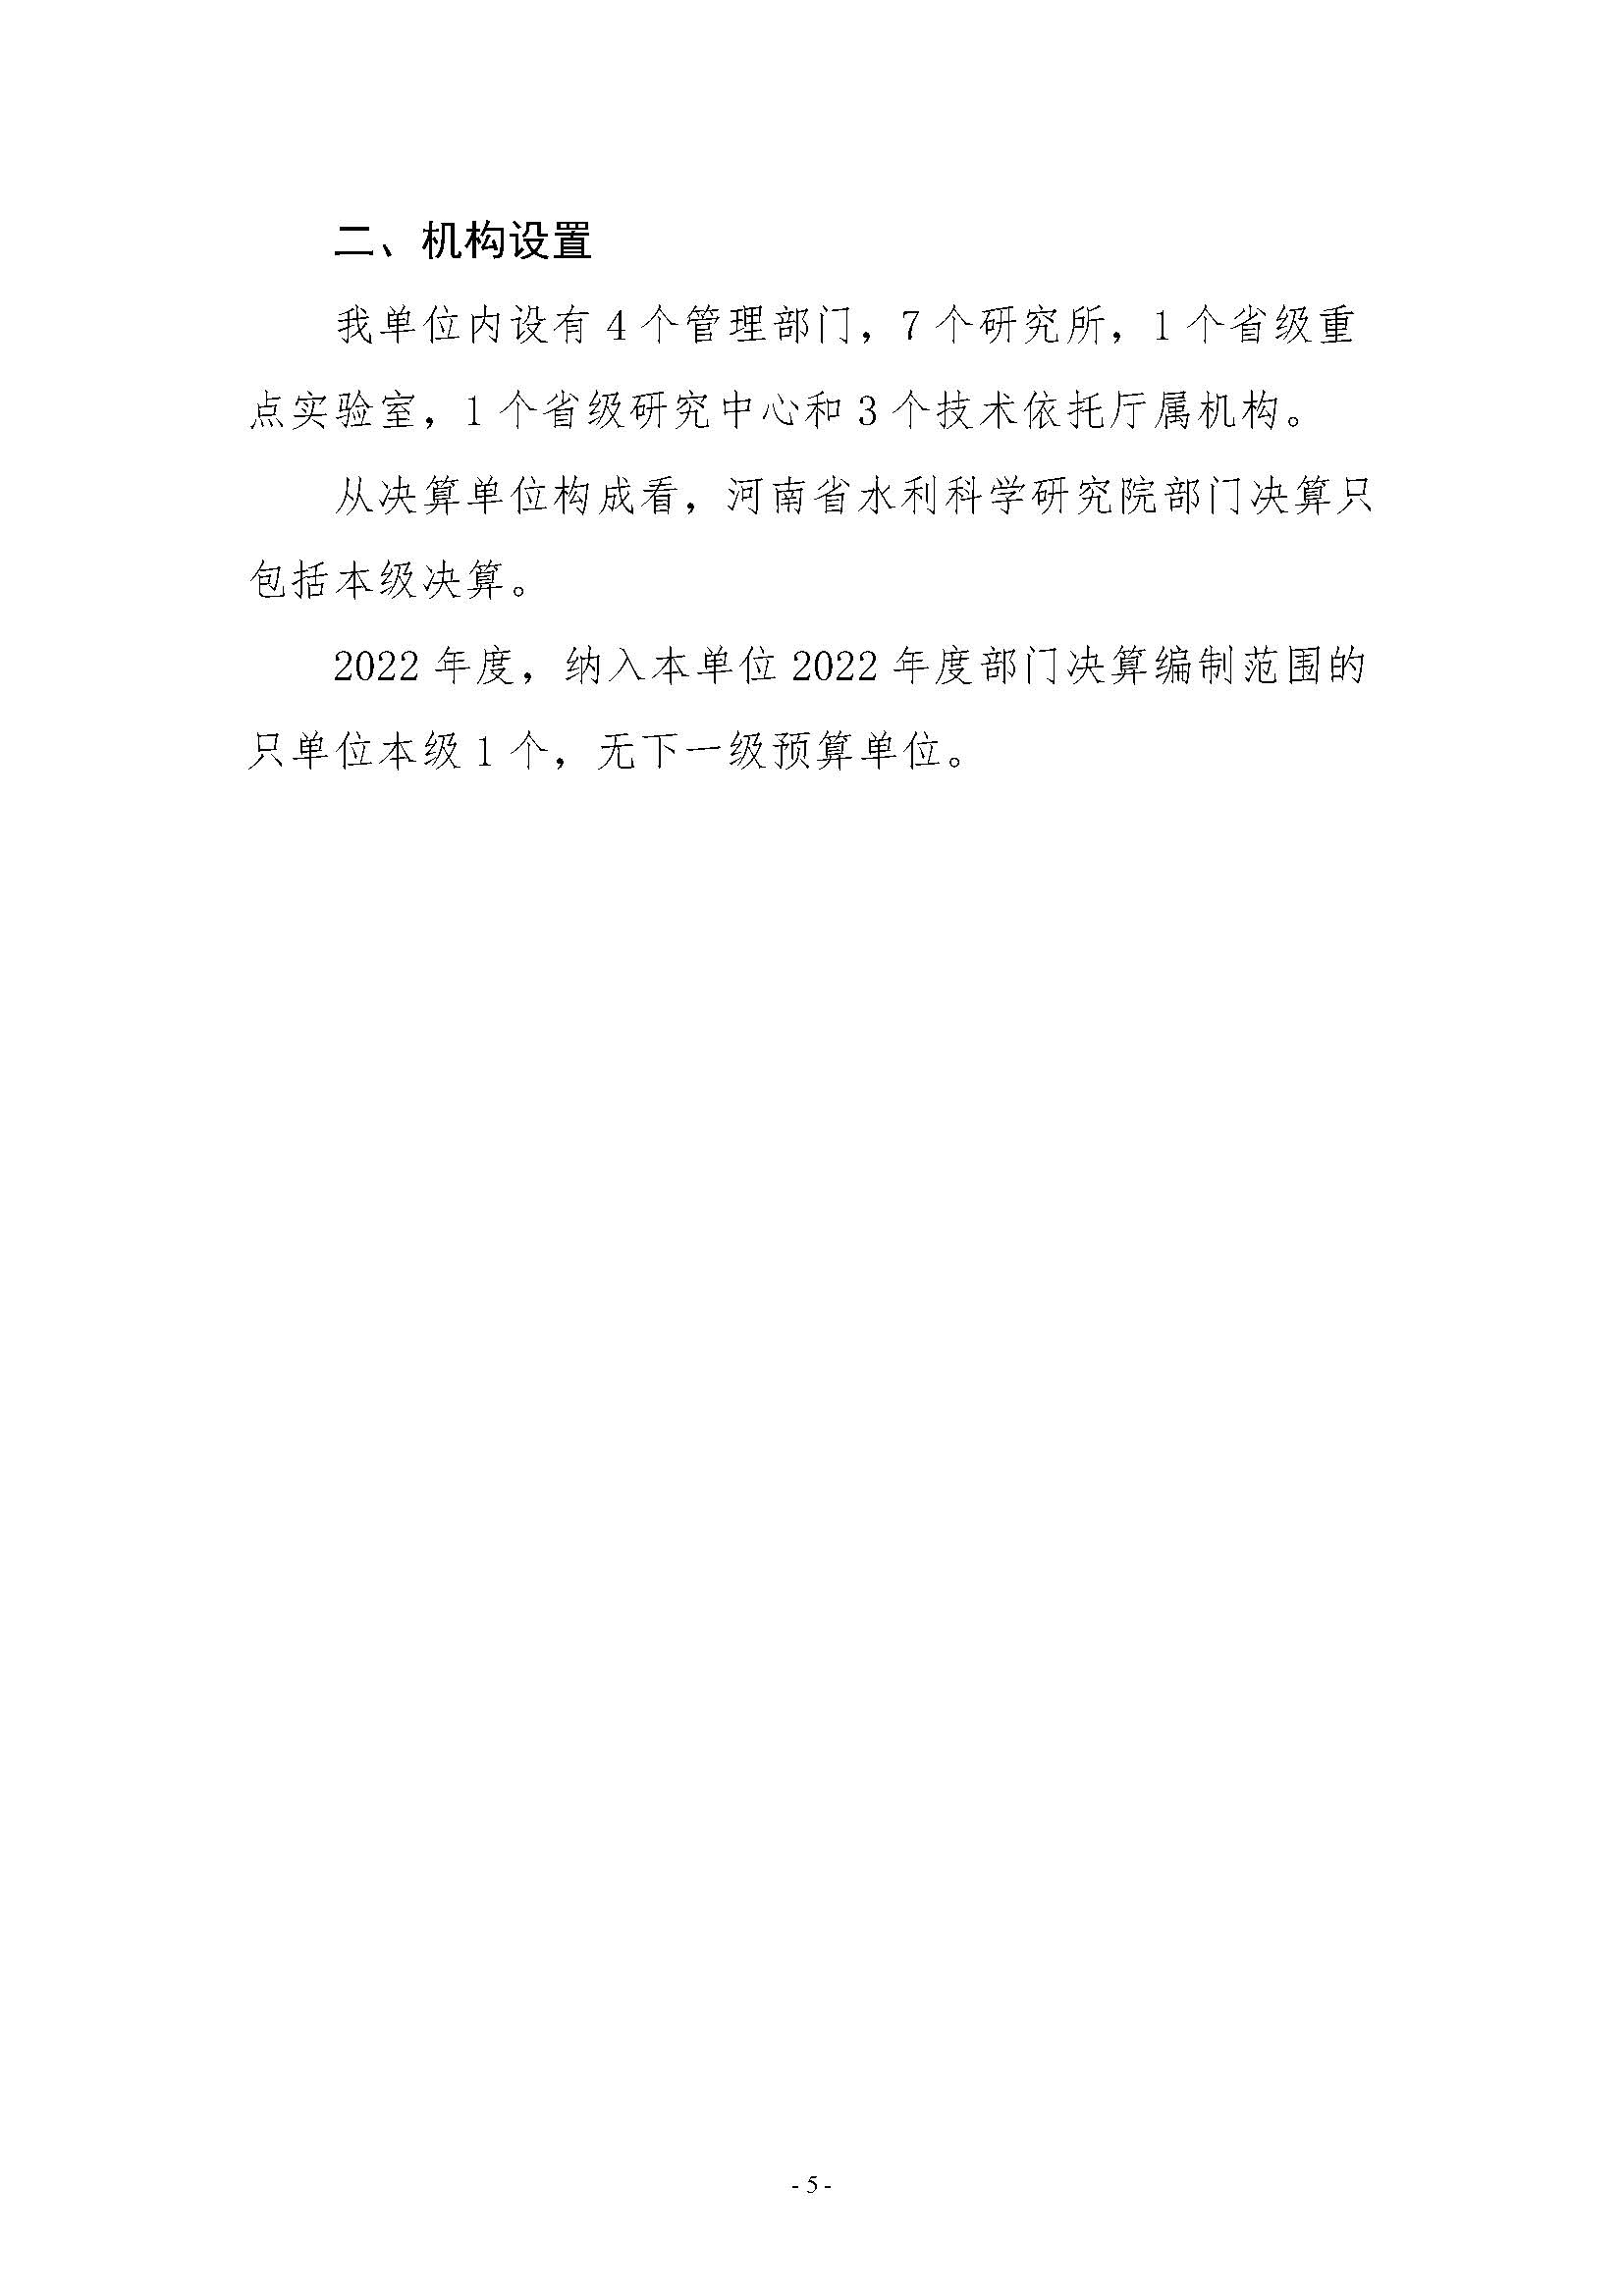 河南省水利科学研究院2022年年度省直部门决算公开(2)_页面_05.jpg